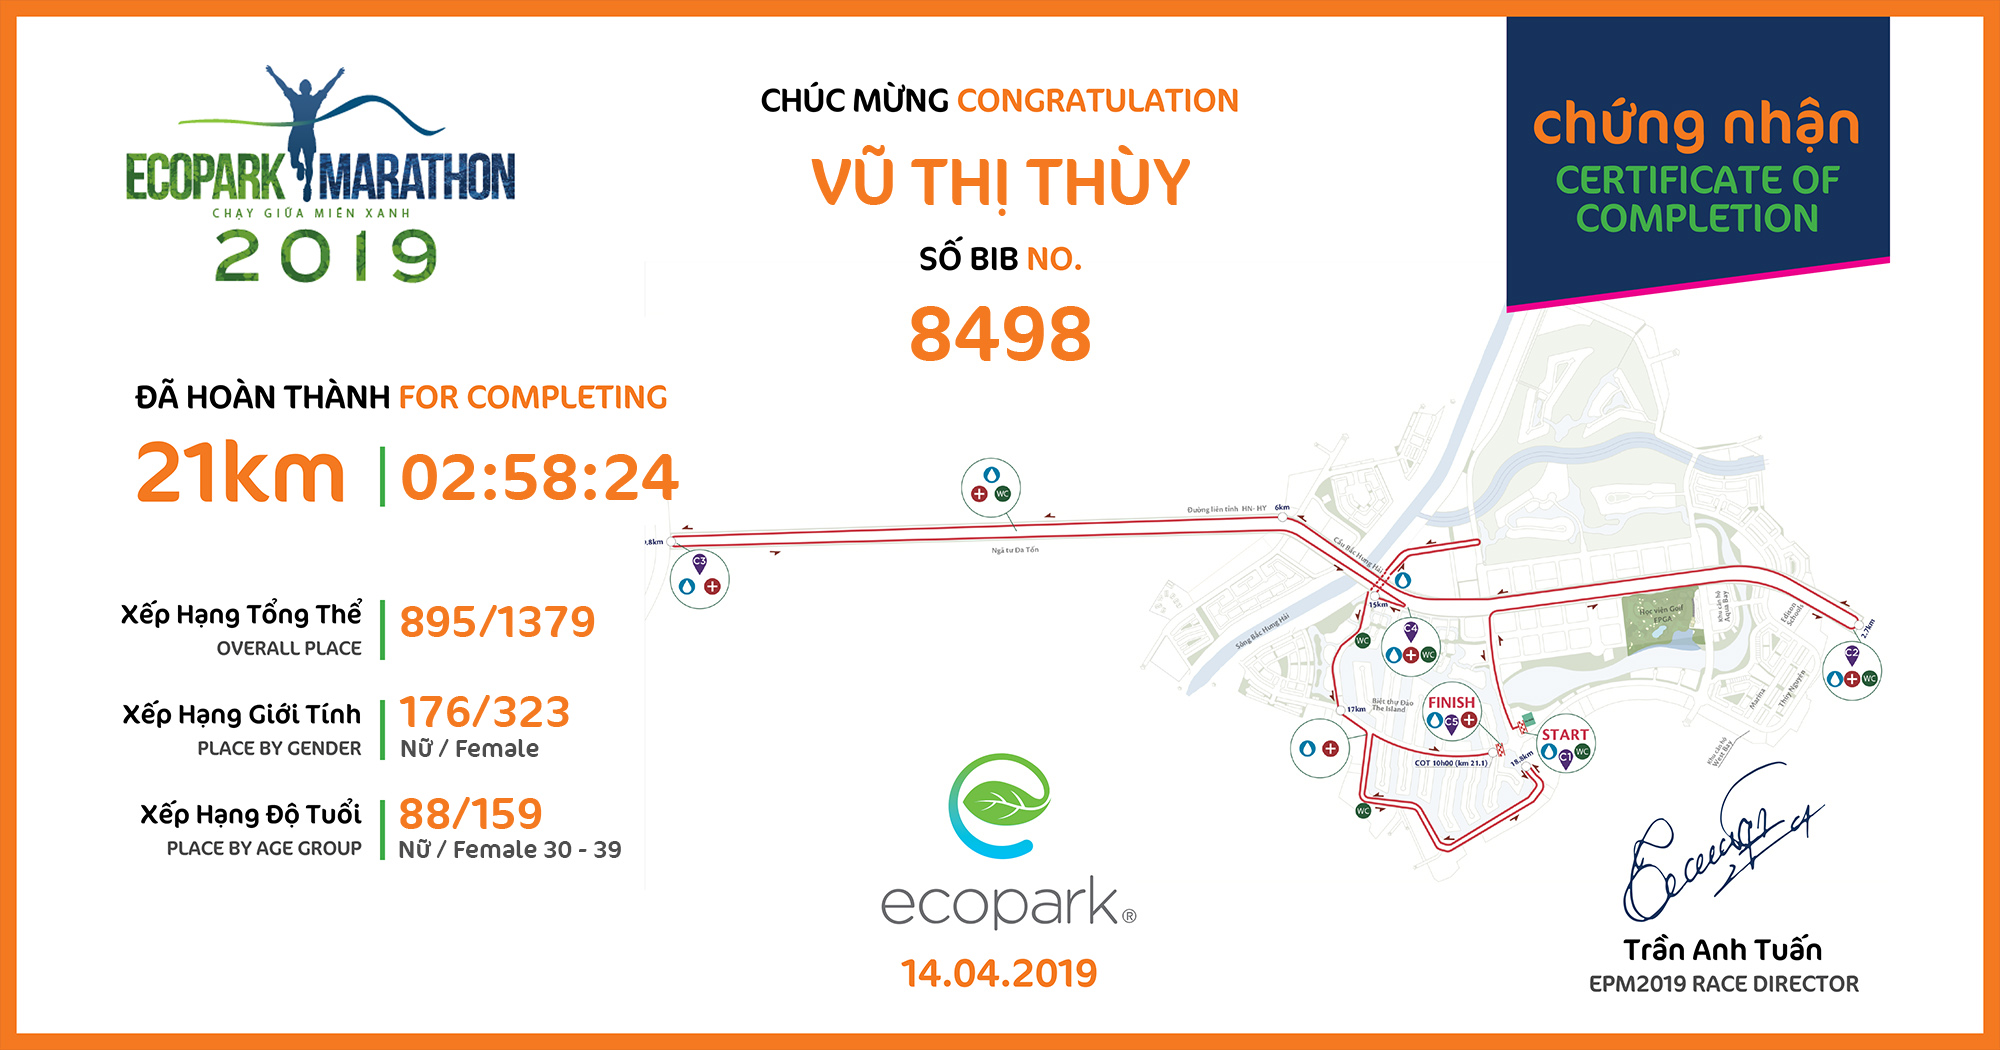 8498 - Vũ Thị Thùy